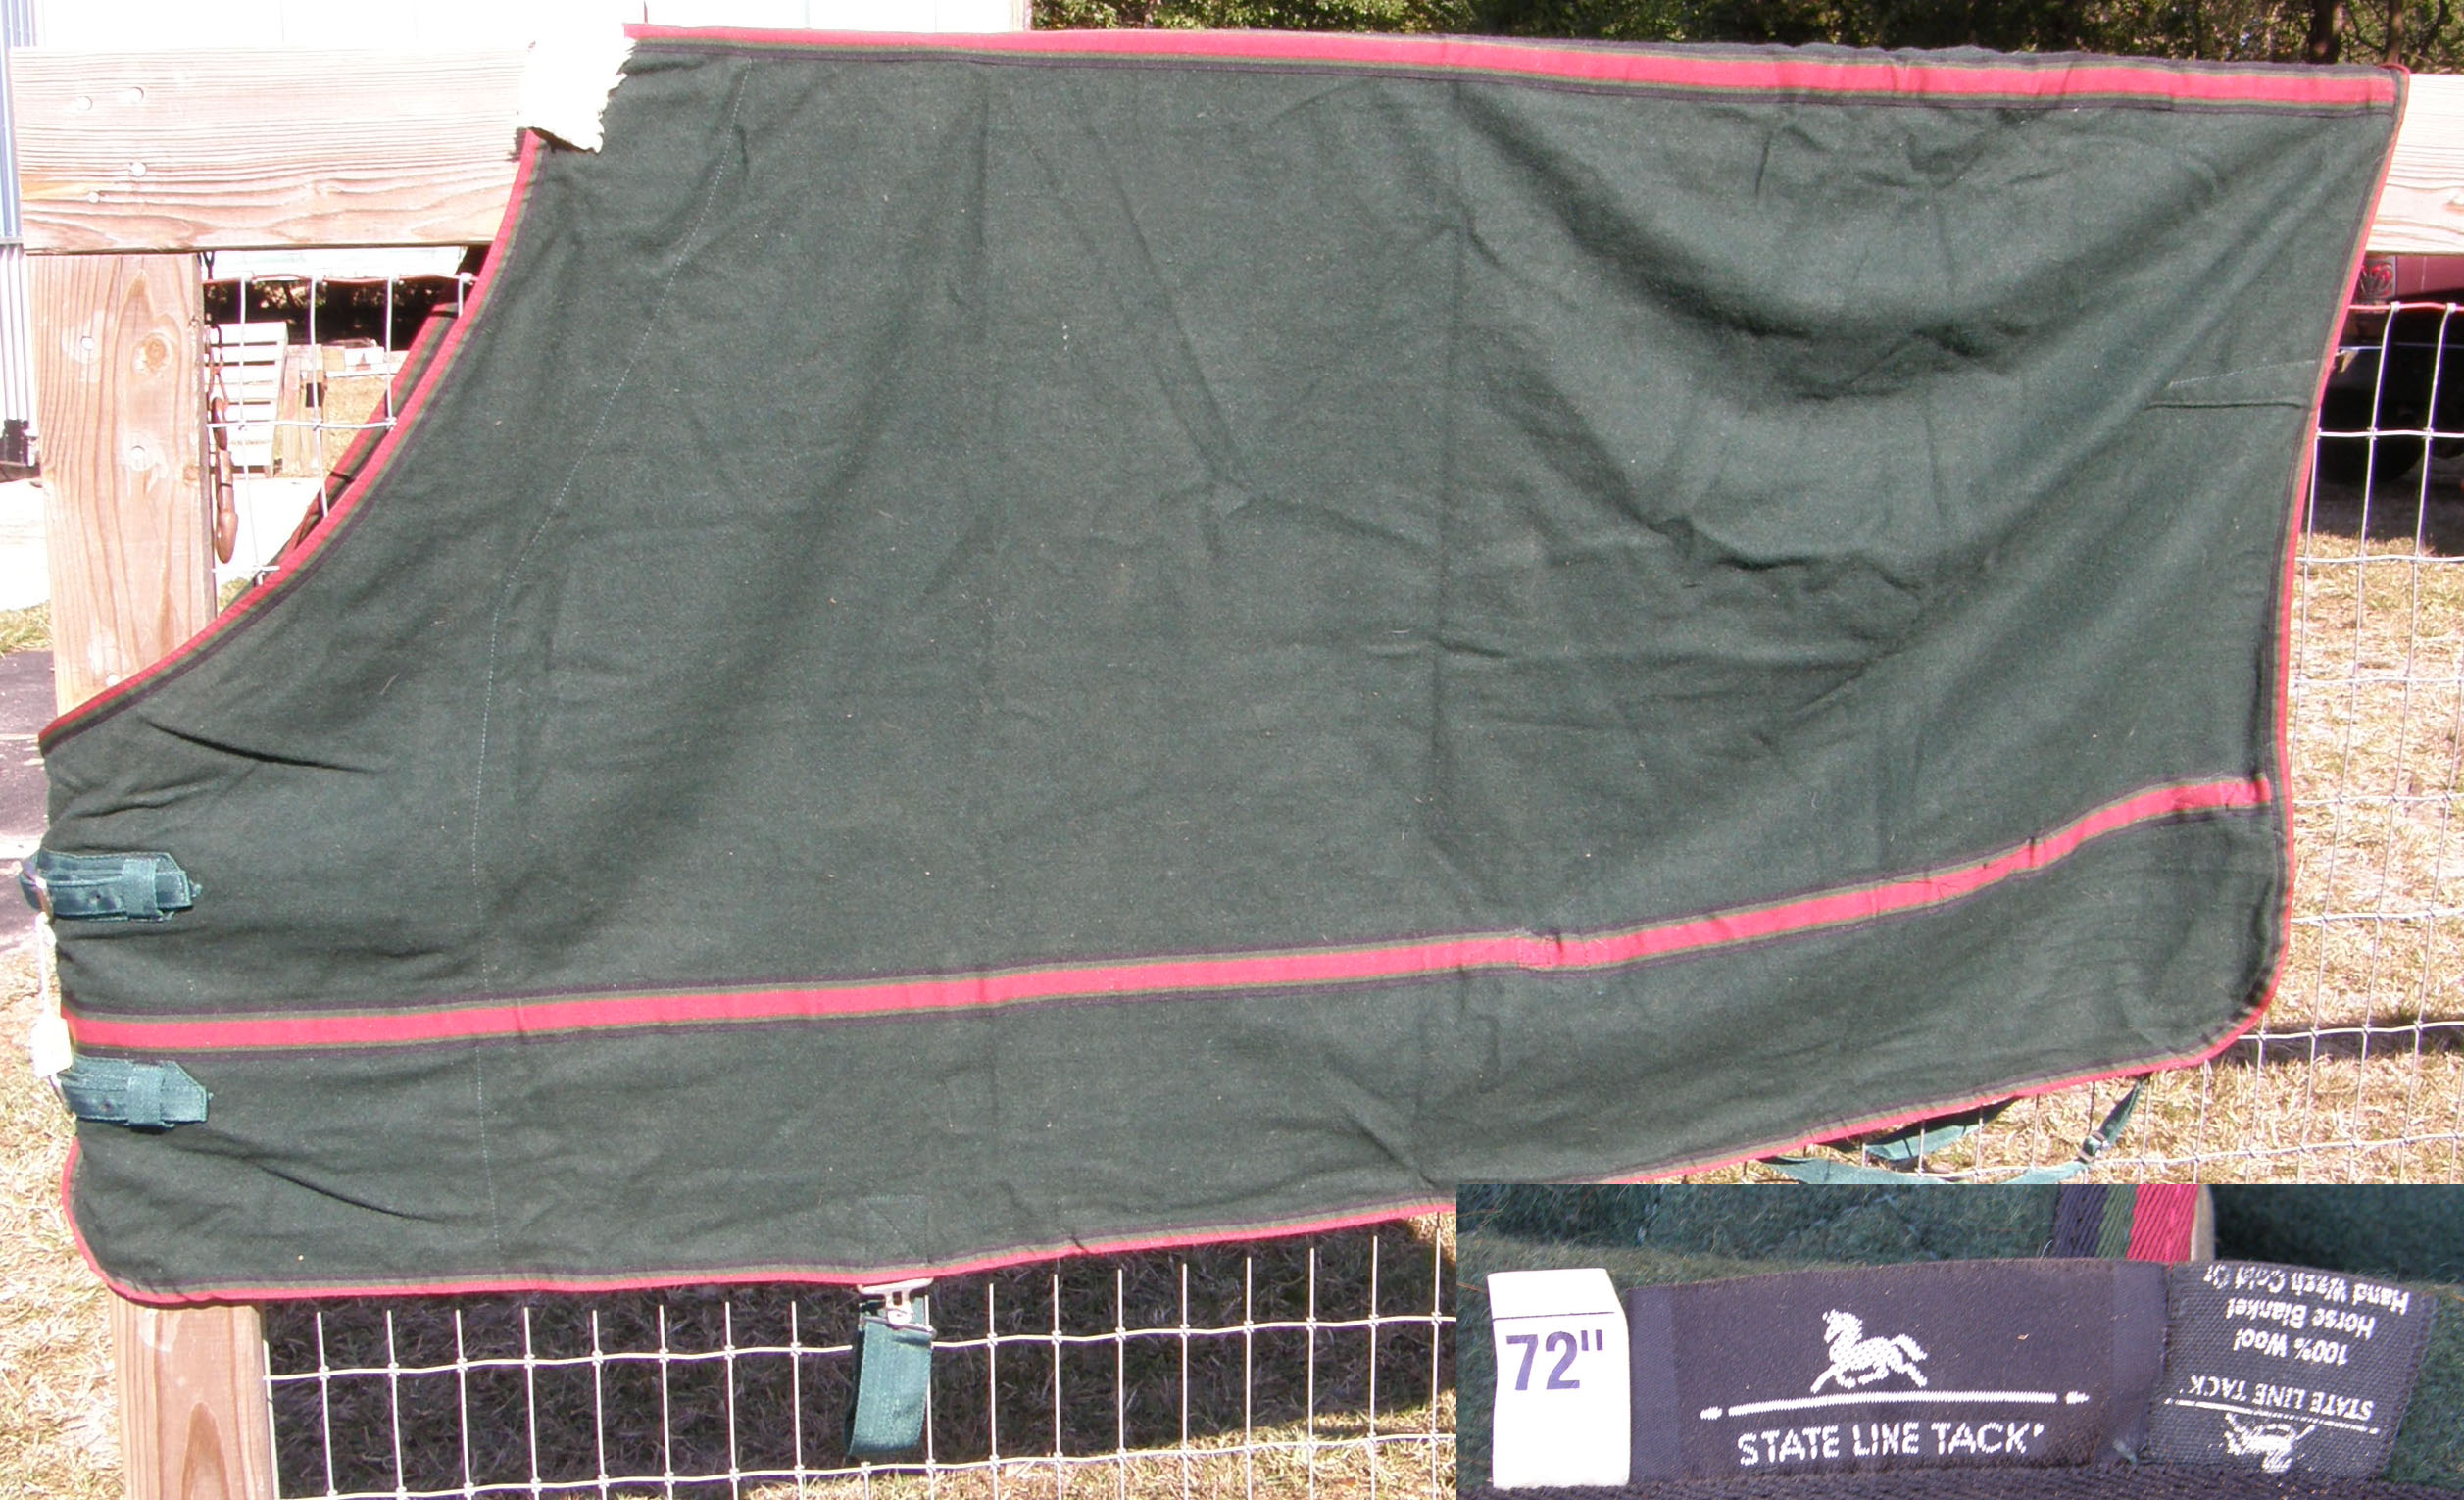 72” OF State Line Tack Wool Dress Sheet SLT Blanket Liner Stable Sheet Horse Cooler Hunter Green/Burgundy